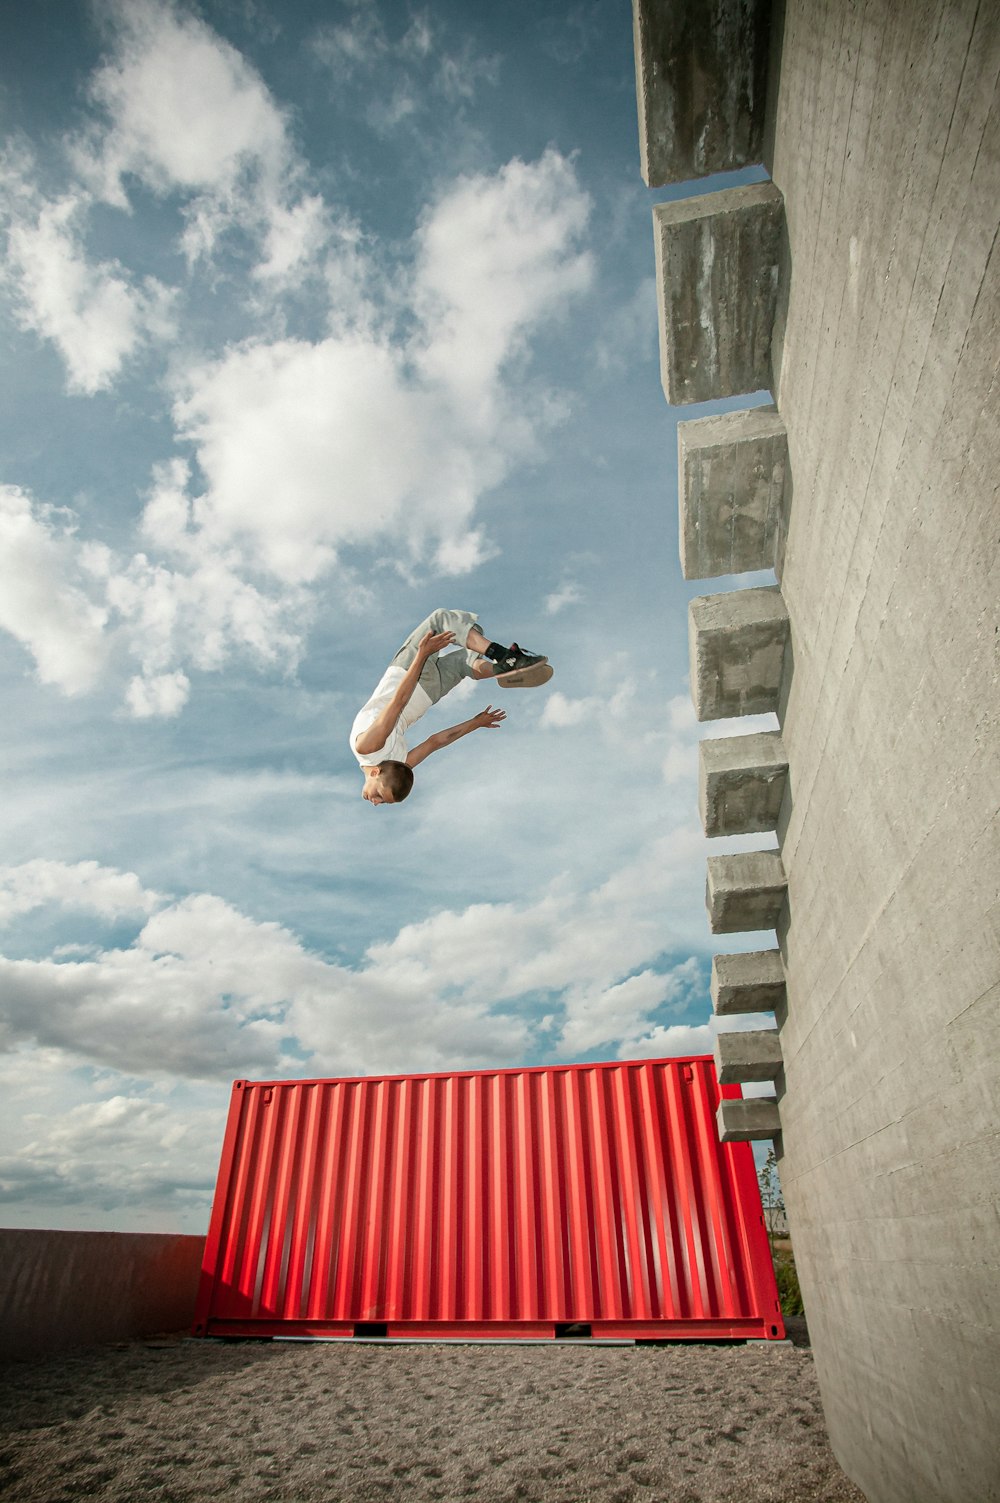 Ein Mann, der auf einem Skateboard durch die Luft fliegt